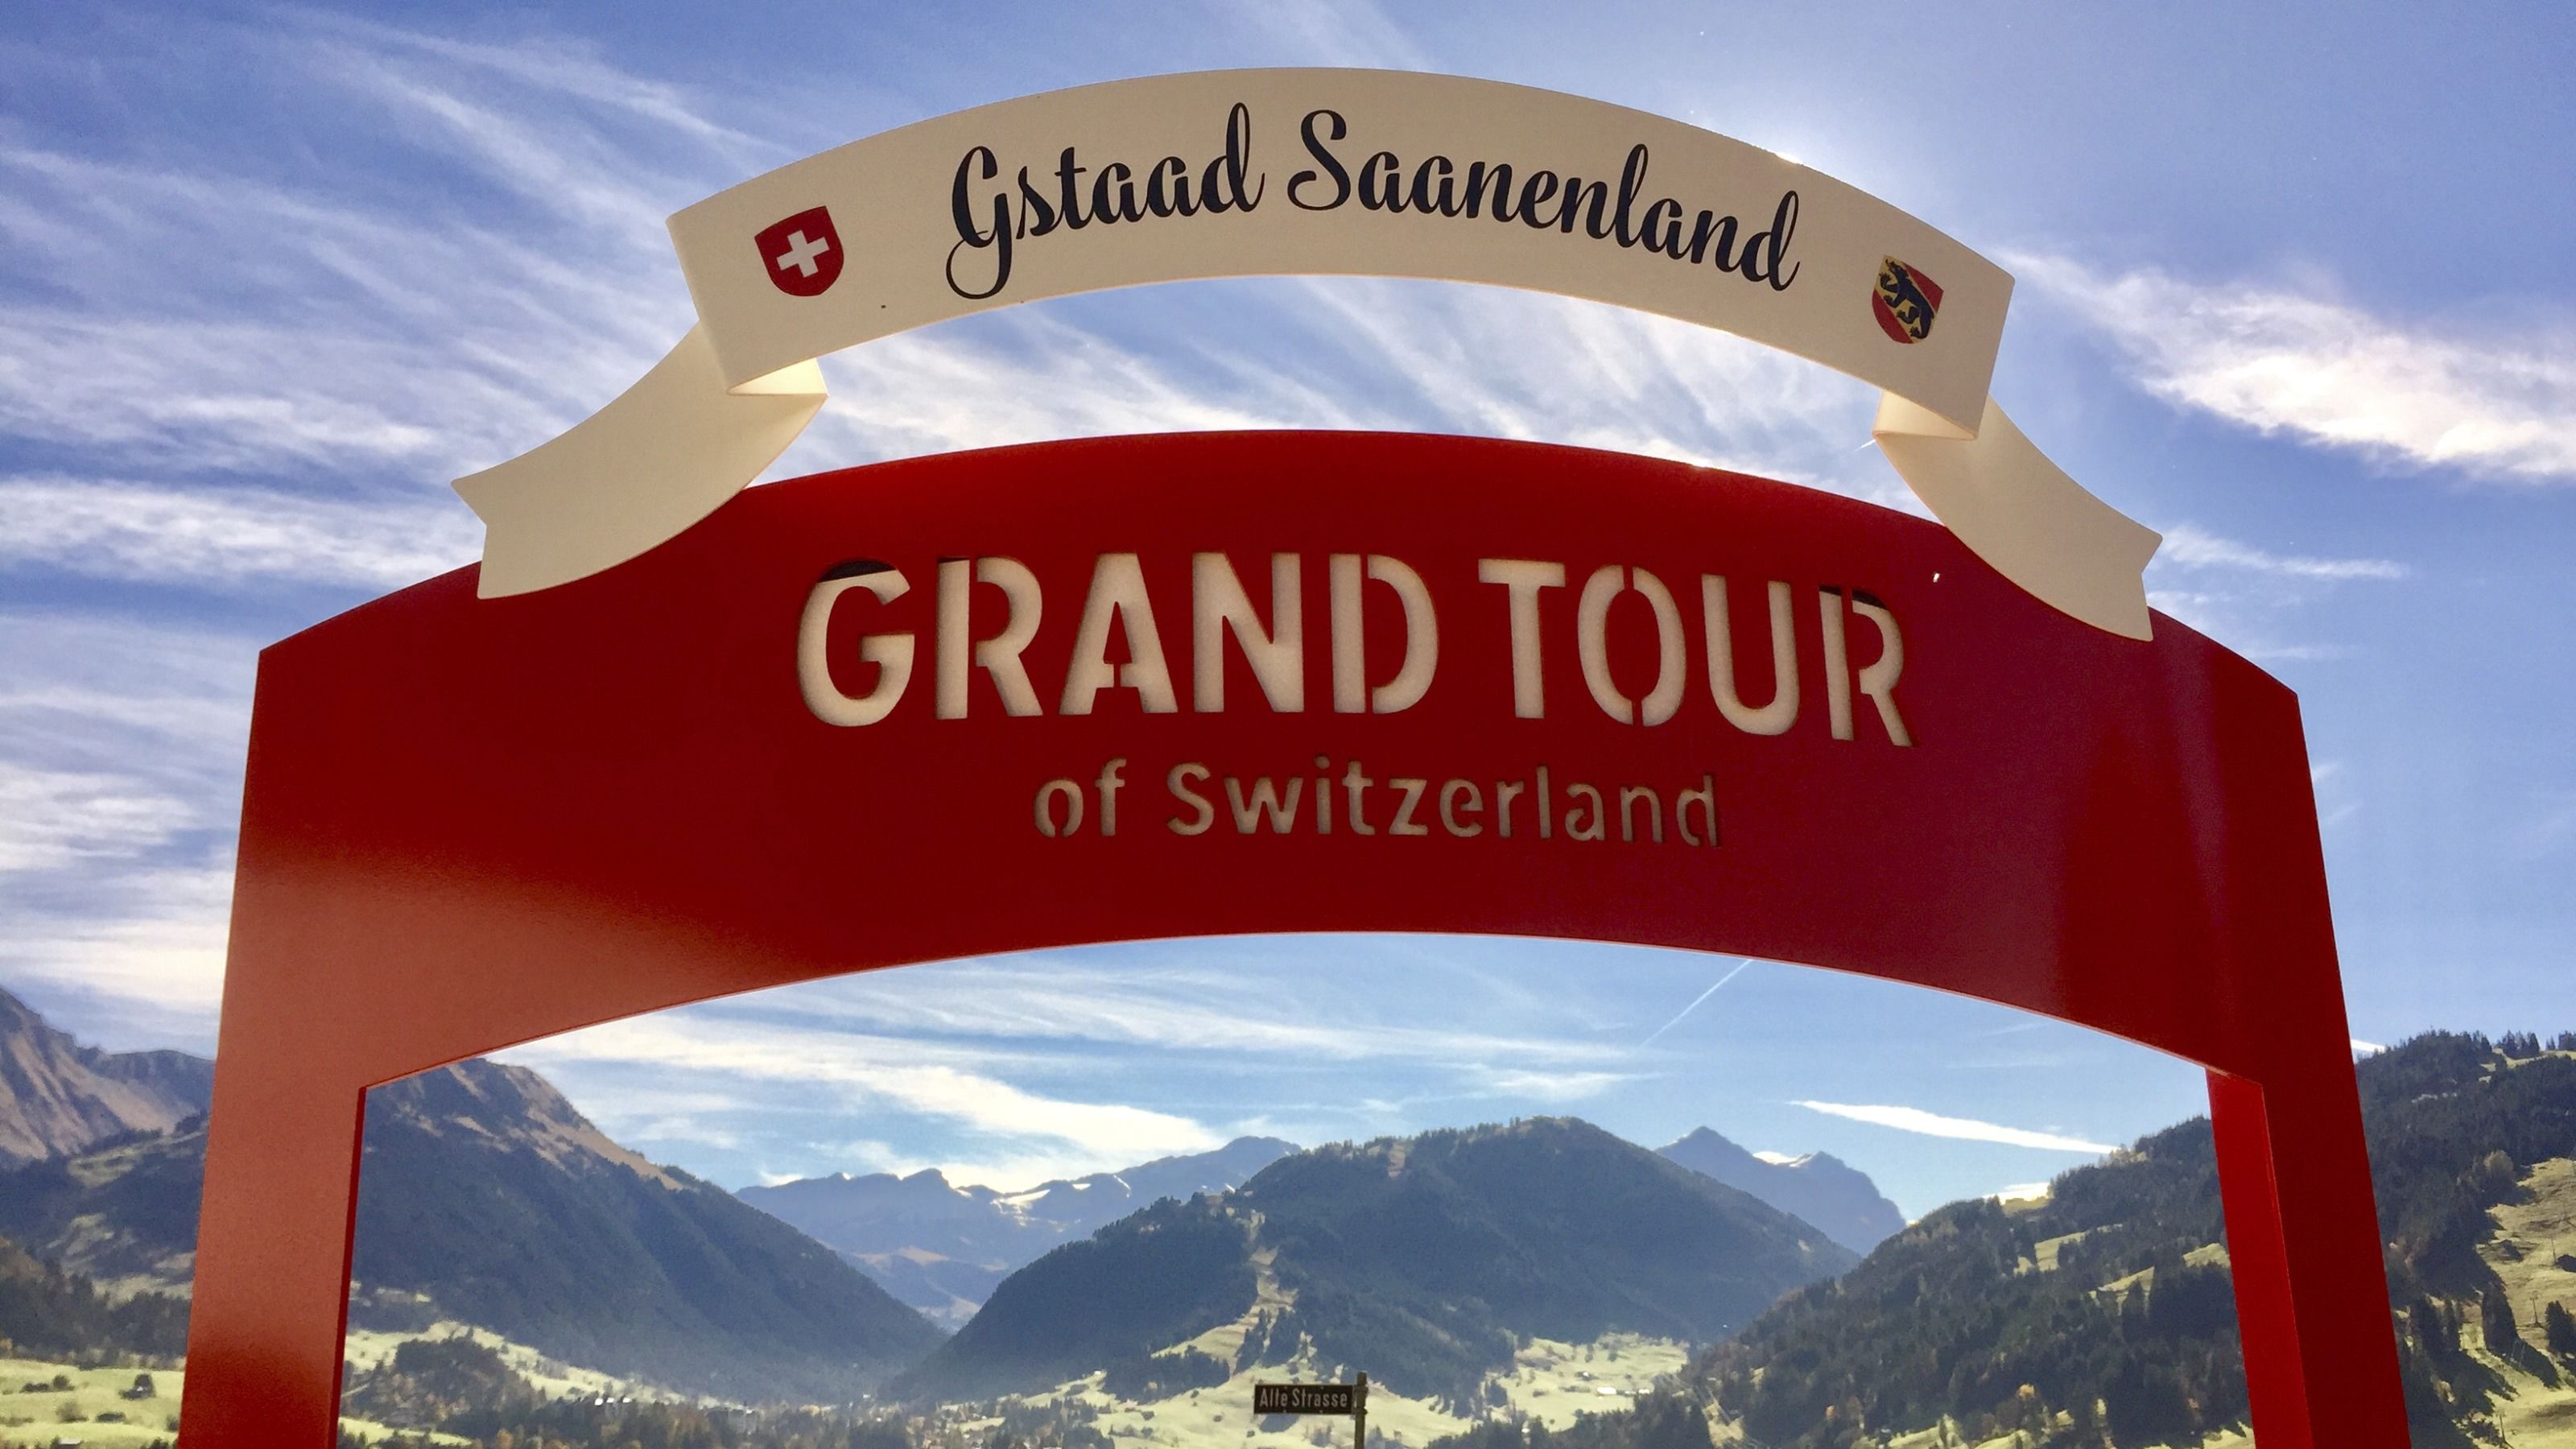 GSTAAD, SWITZERLAND, WALKING TOUR